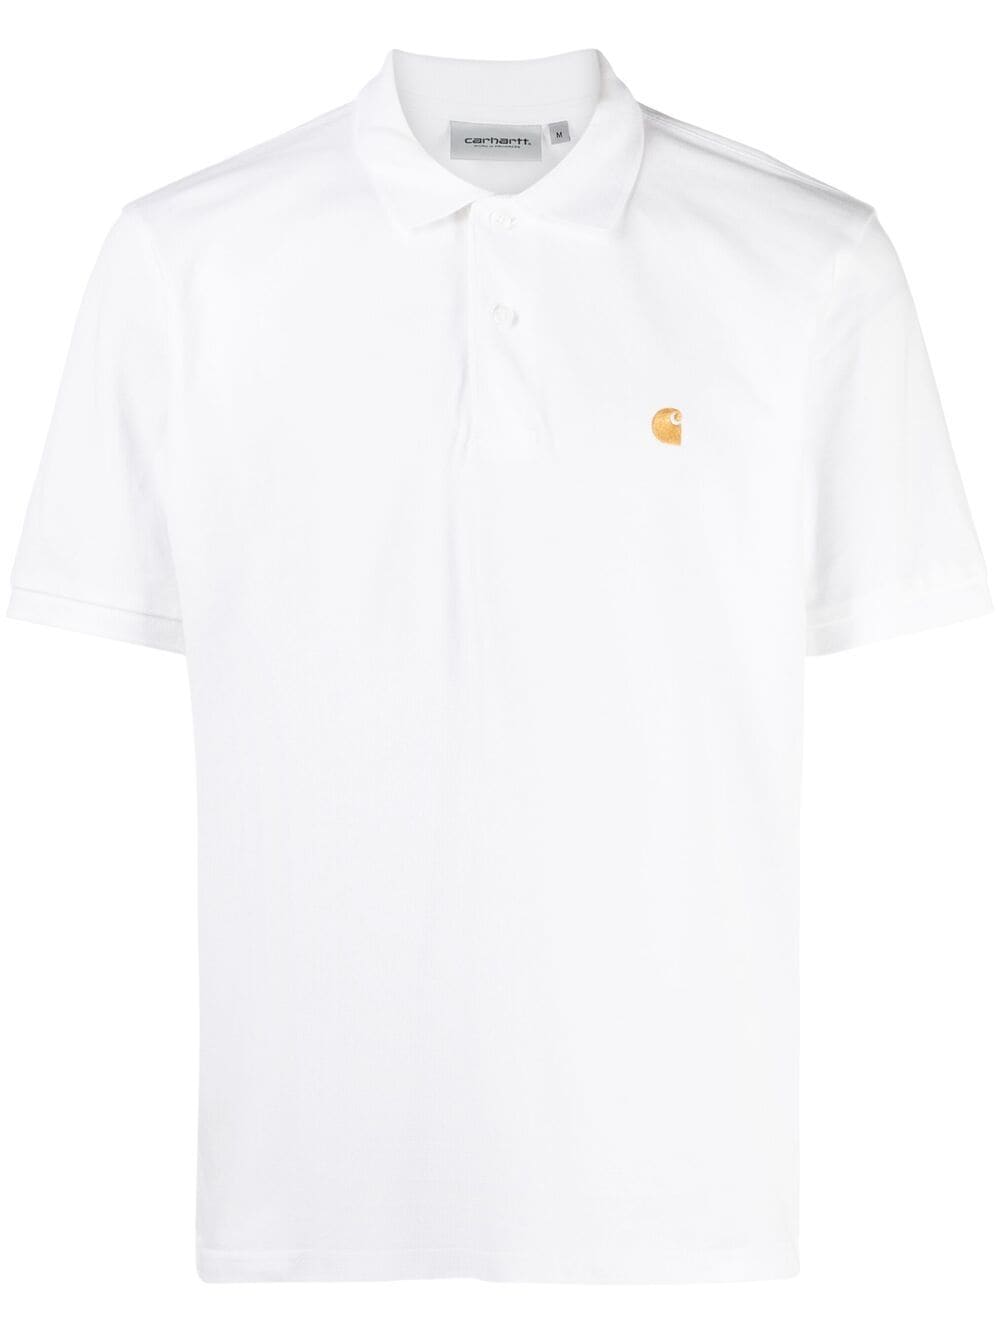 фото Carhartt wip рубашка поло с вышитым логотипом